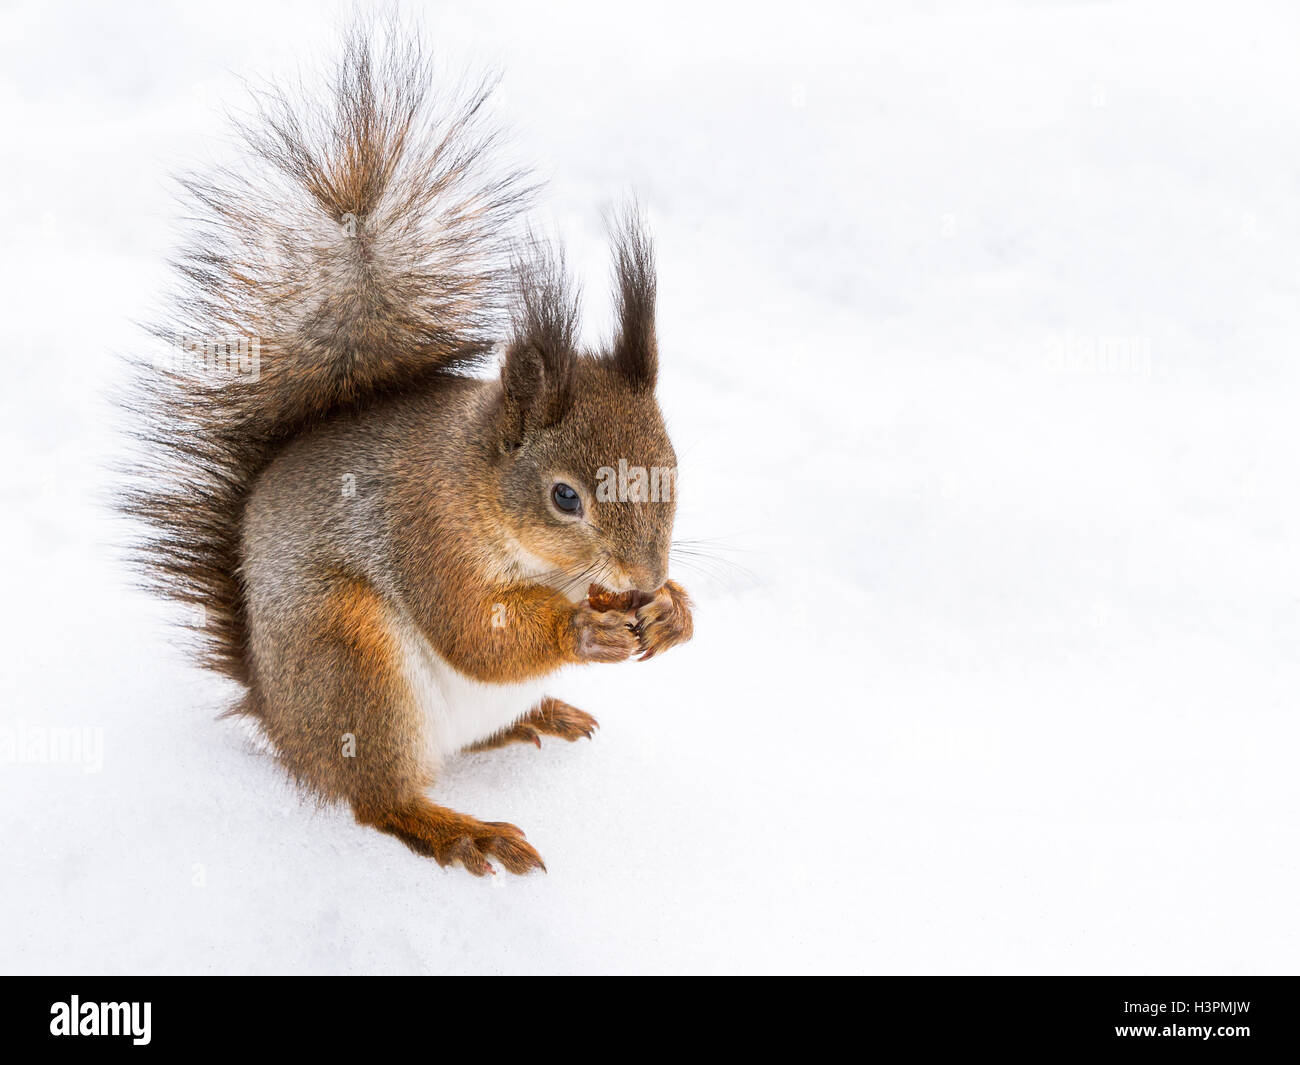 Eichhörnchen Essen Nuss auf Schnee Stockfoto